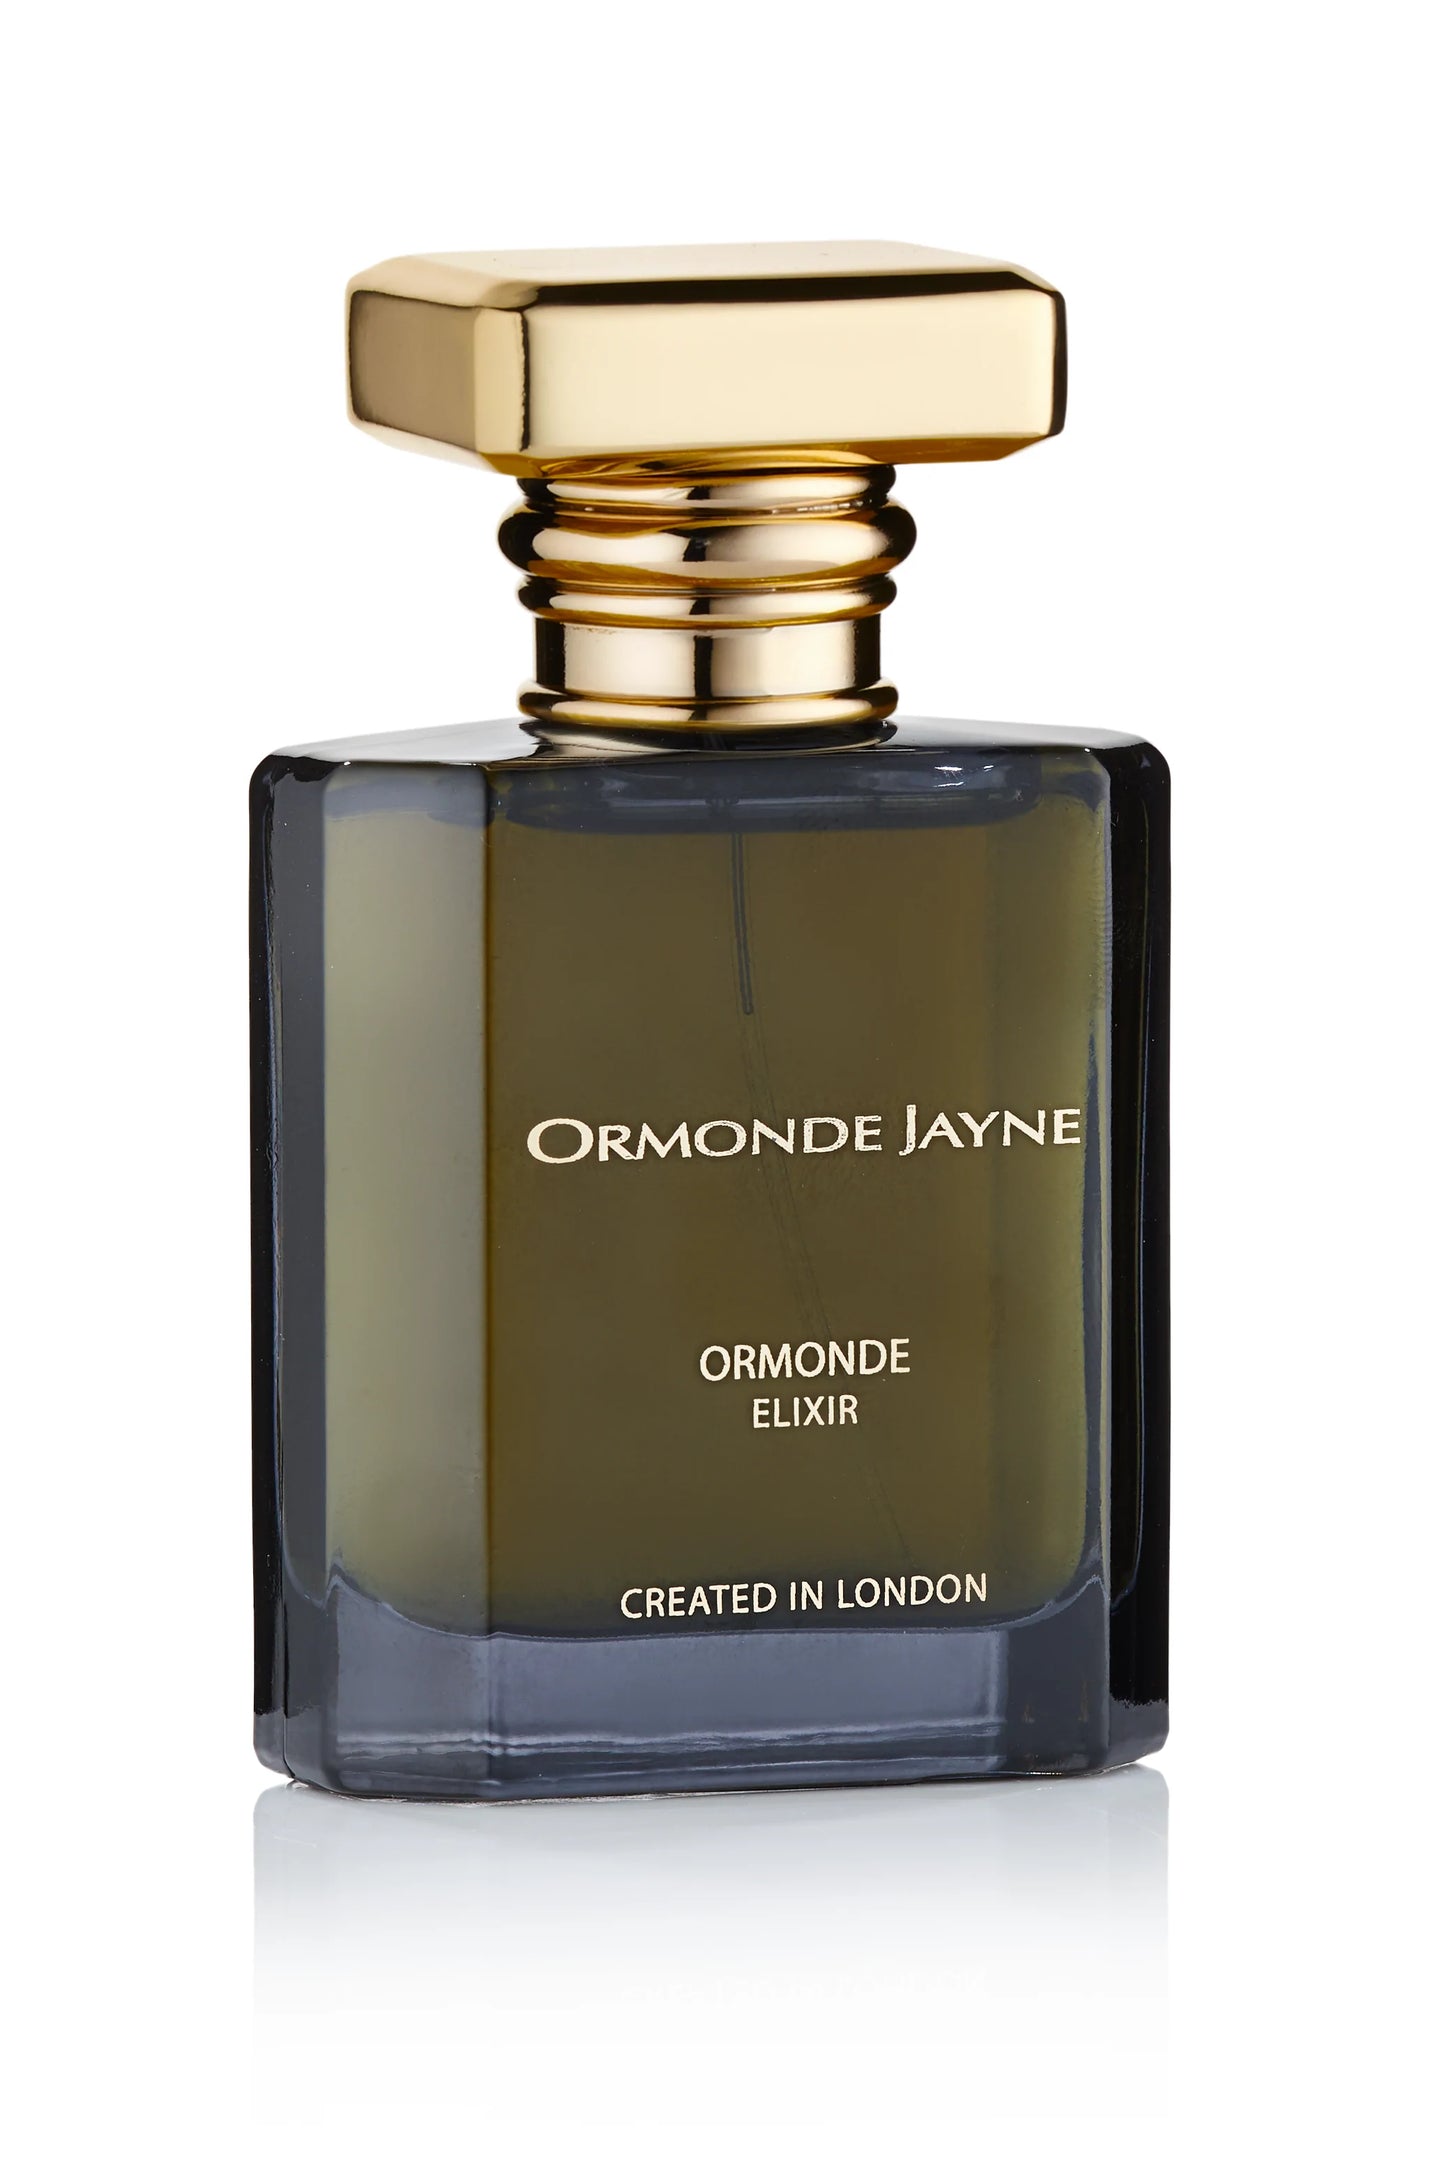 Ormonde Jayne Ormonde Eliksir 2 ml 0.06 fl. oz oficjalna próbka zapachu